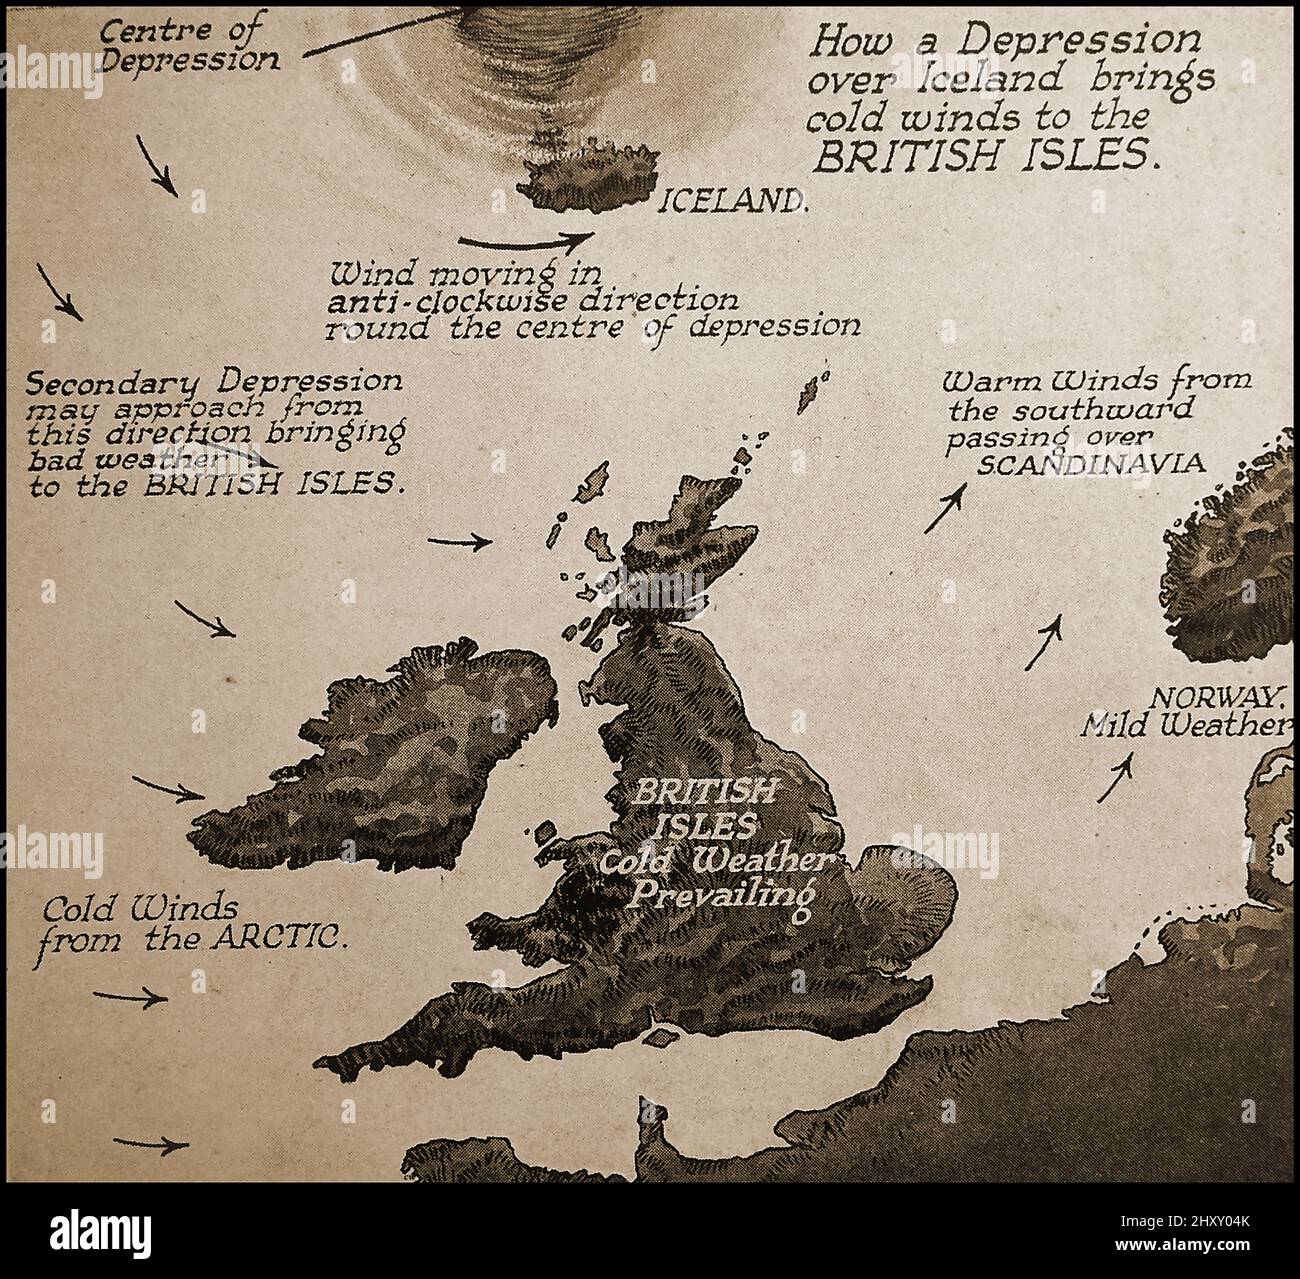 c1940- une vieille Pictoria; carte météorologique montrant comment une dépression au-dessus de l'Islande affecte les îles britanniques. Banque D'Images